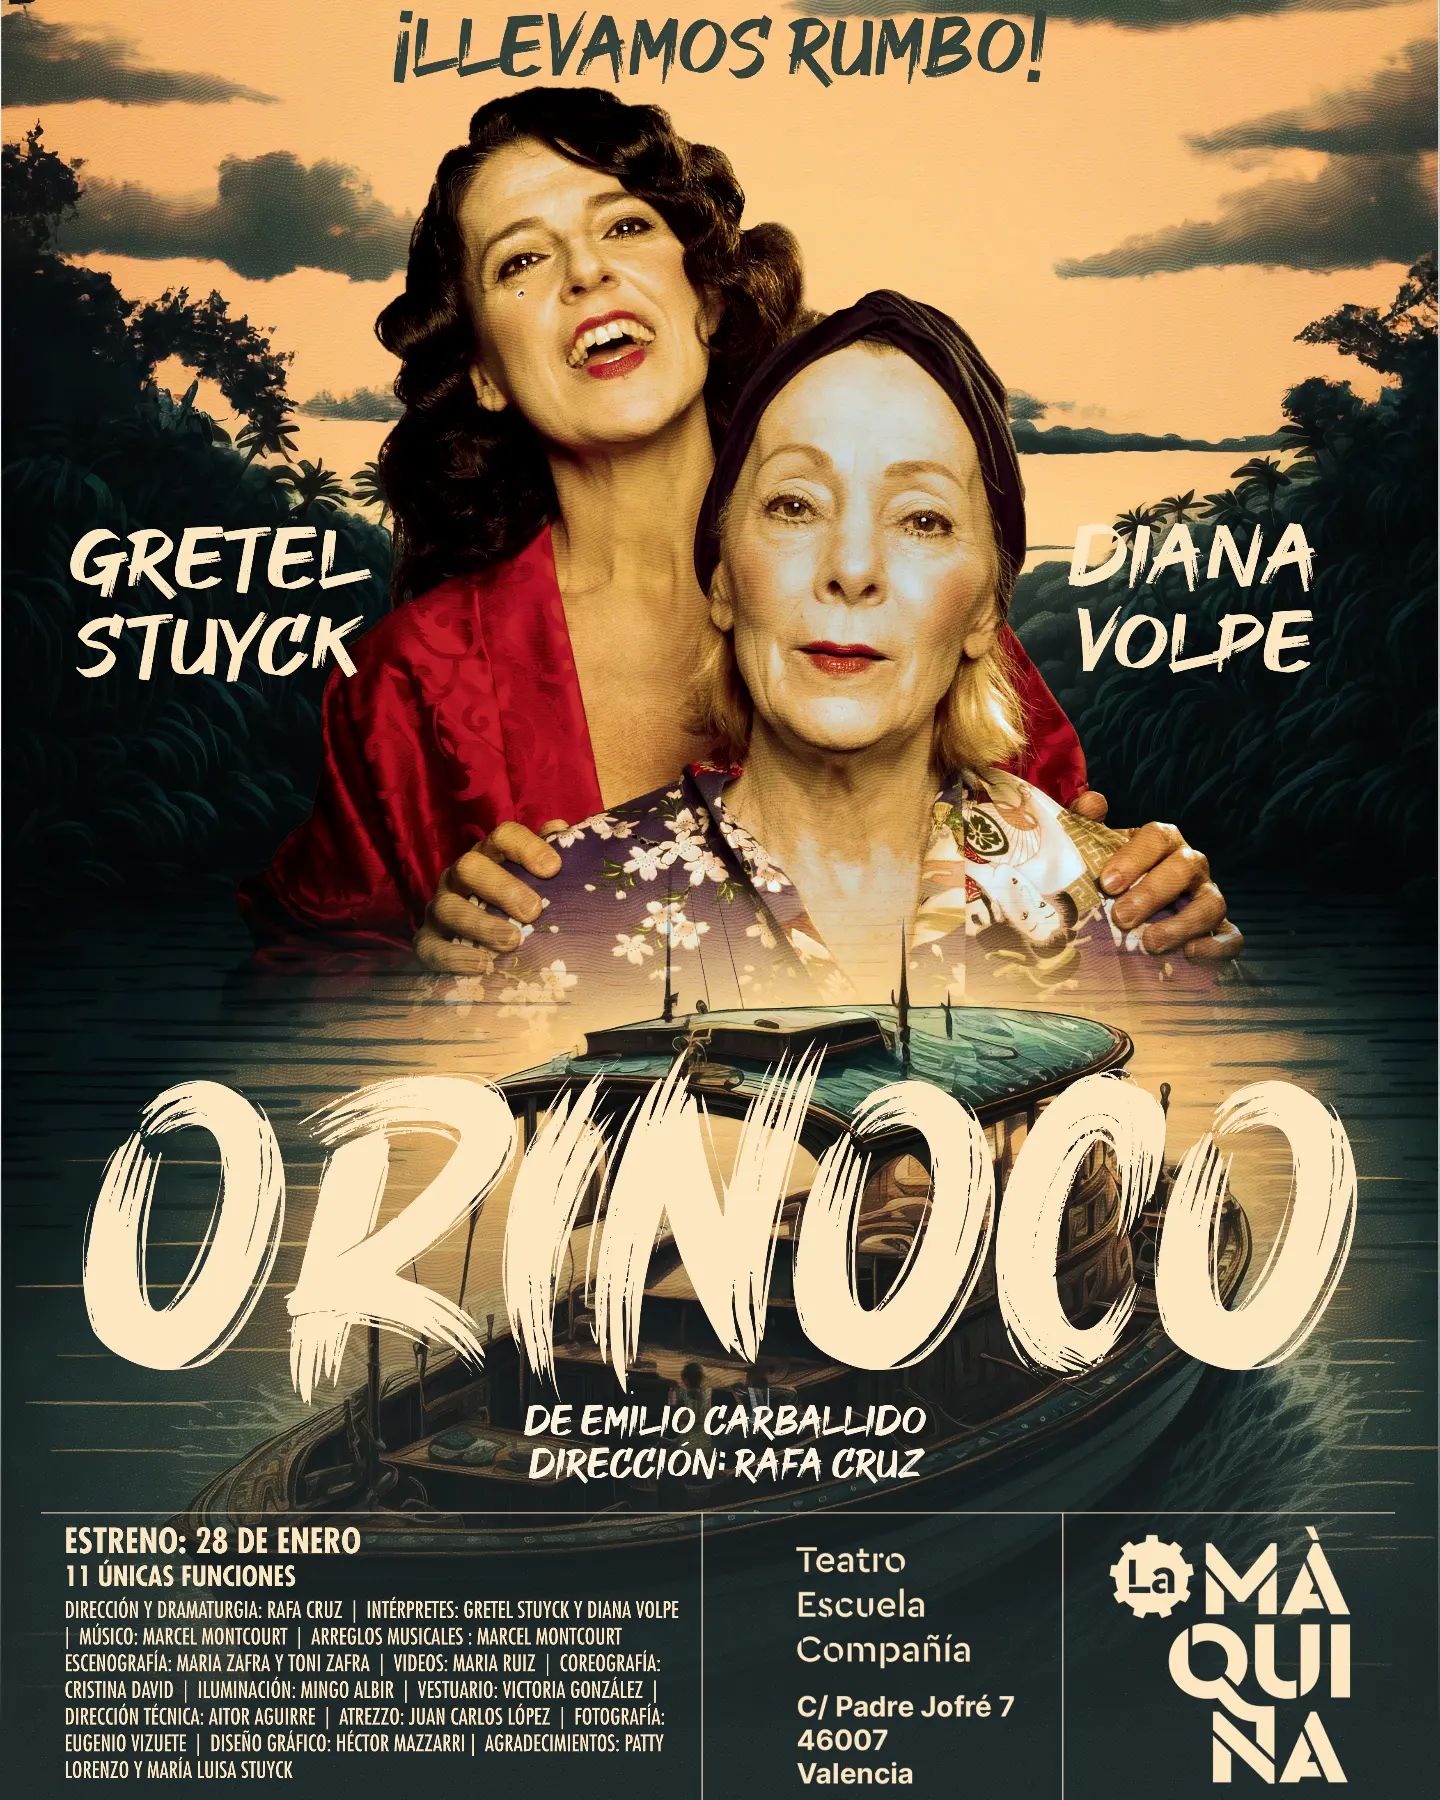 La Màquina Teatro estrena “Orinoco”, del premiado dramaturgo mexicano, Emilio Carballido